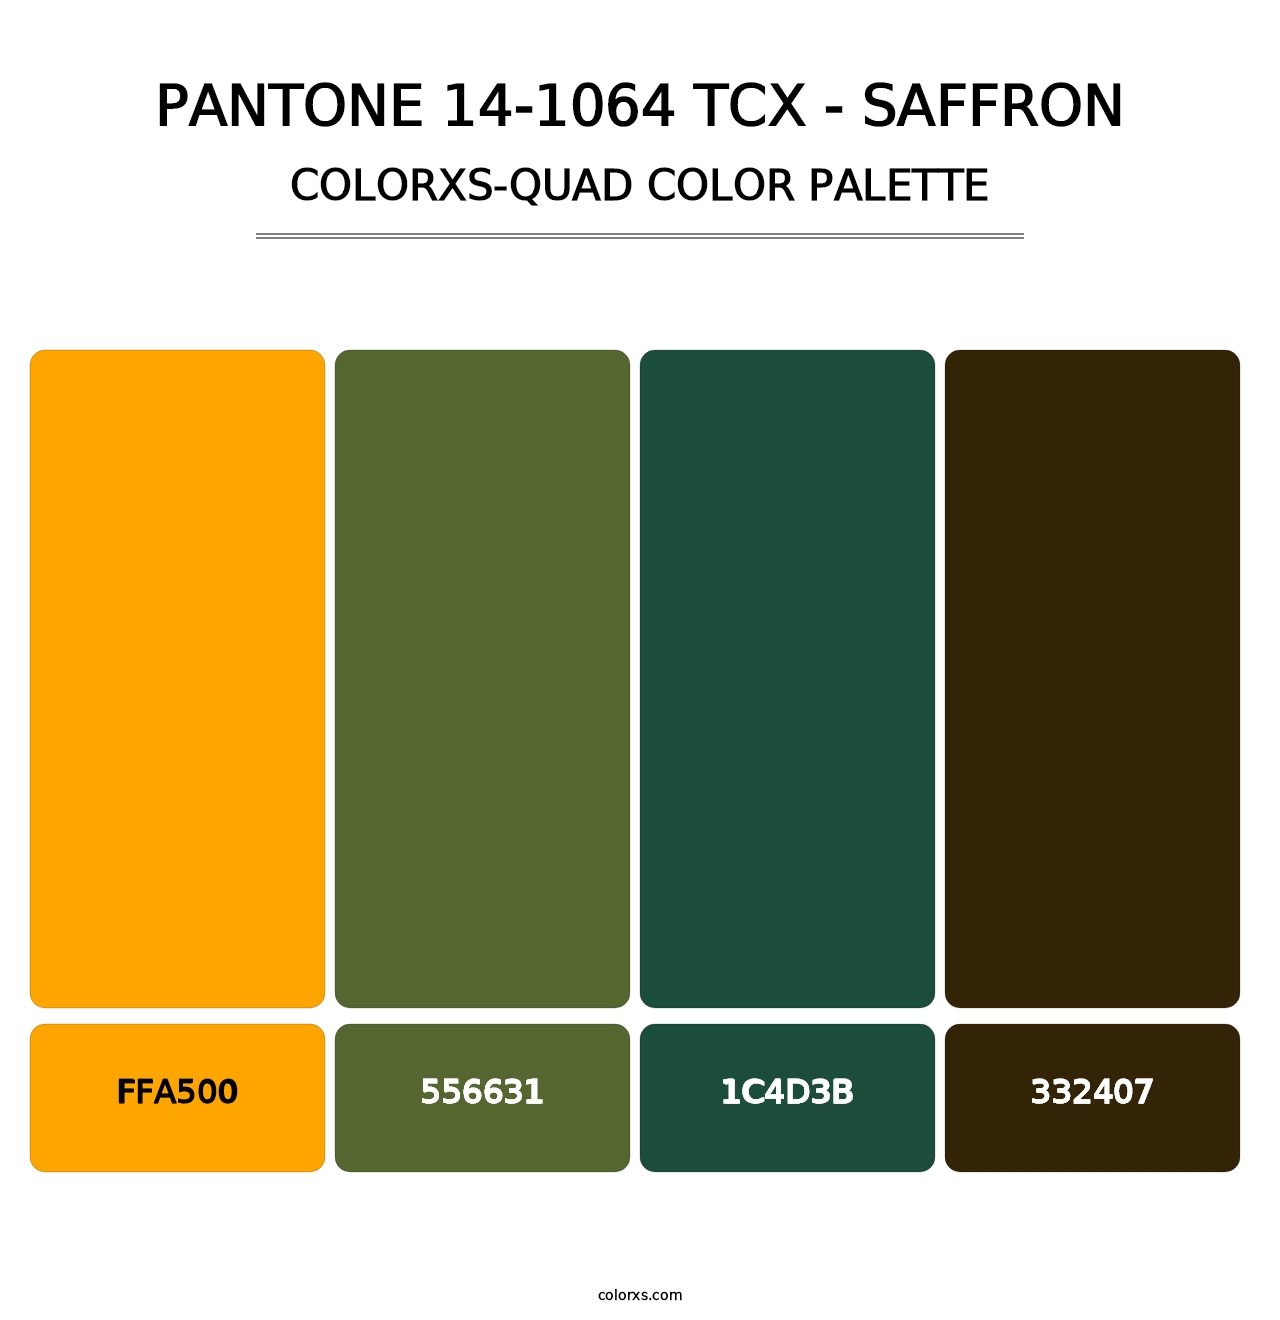 PANTONE 14-1064 TCX - Saffron - Colorxs Quad Palette